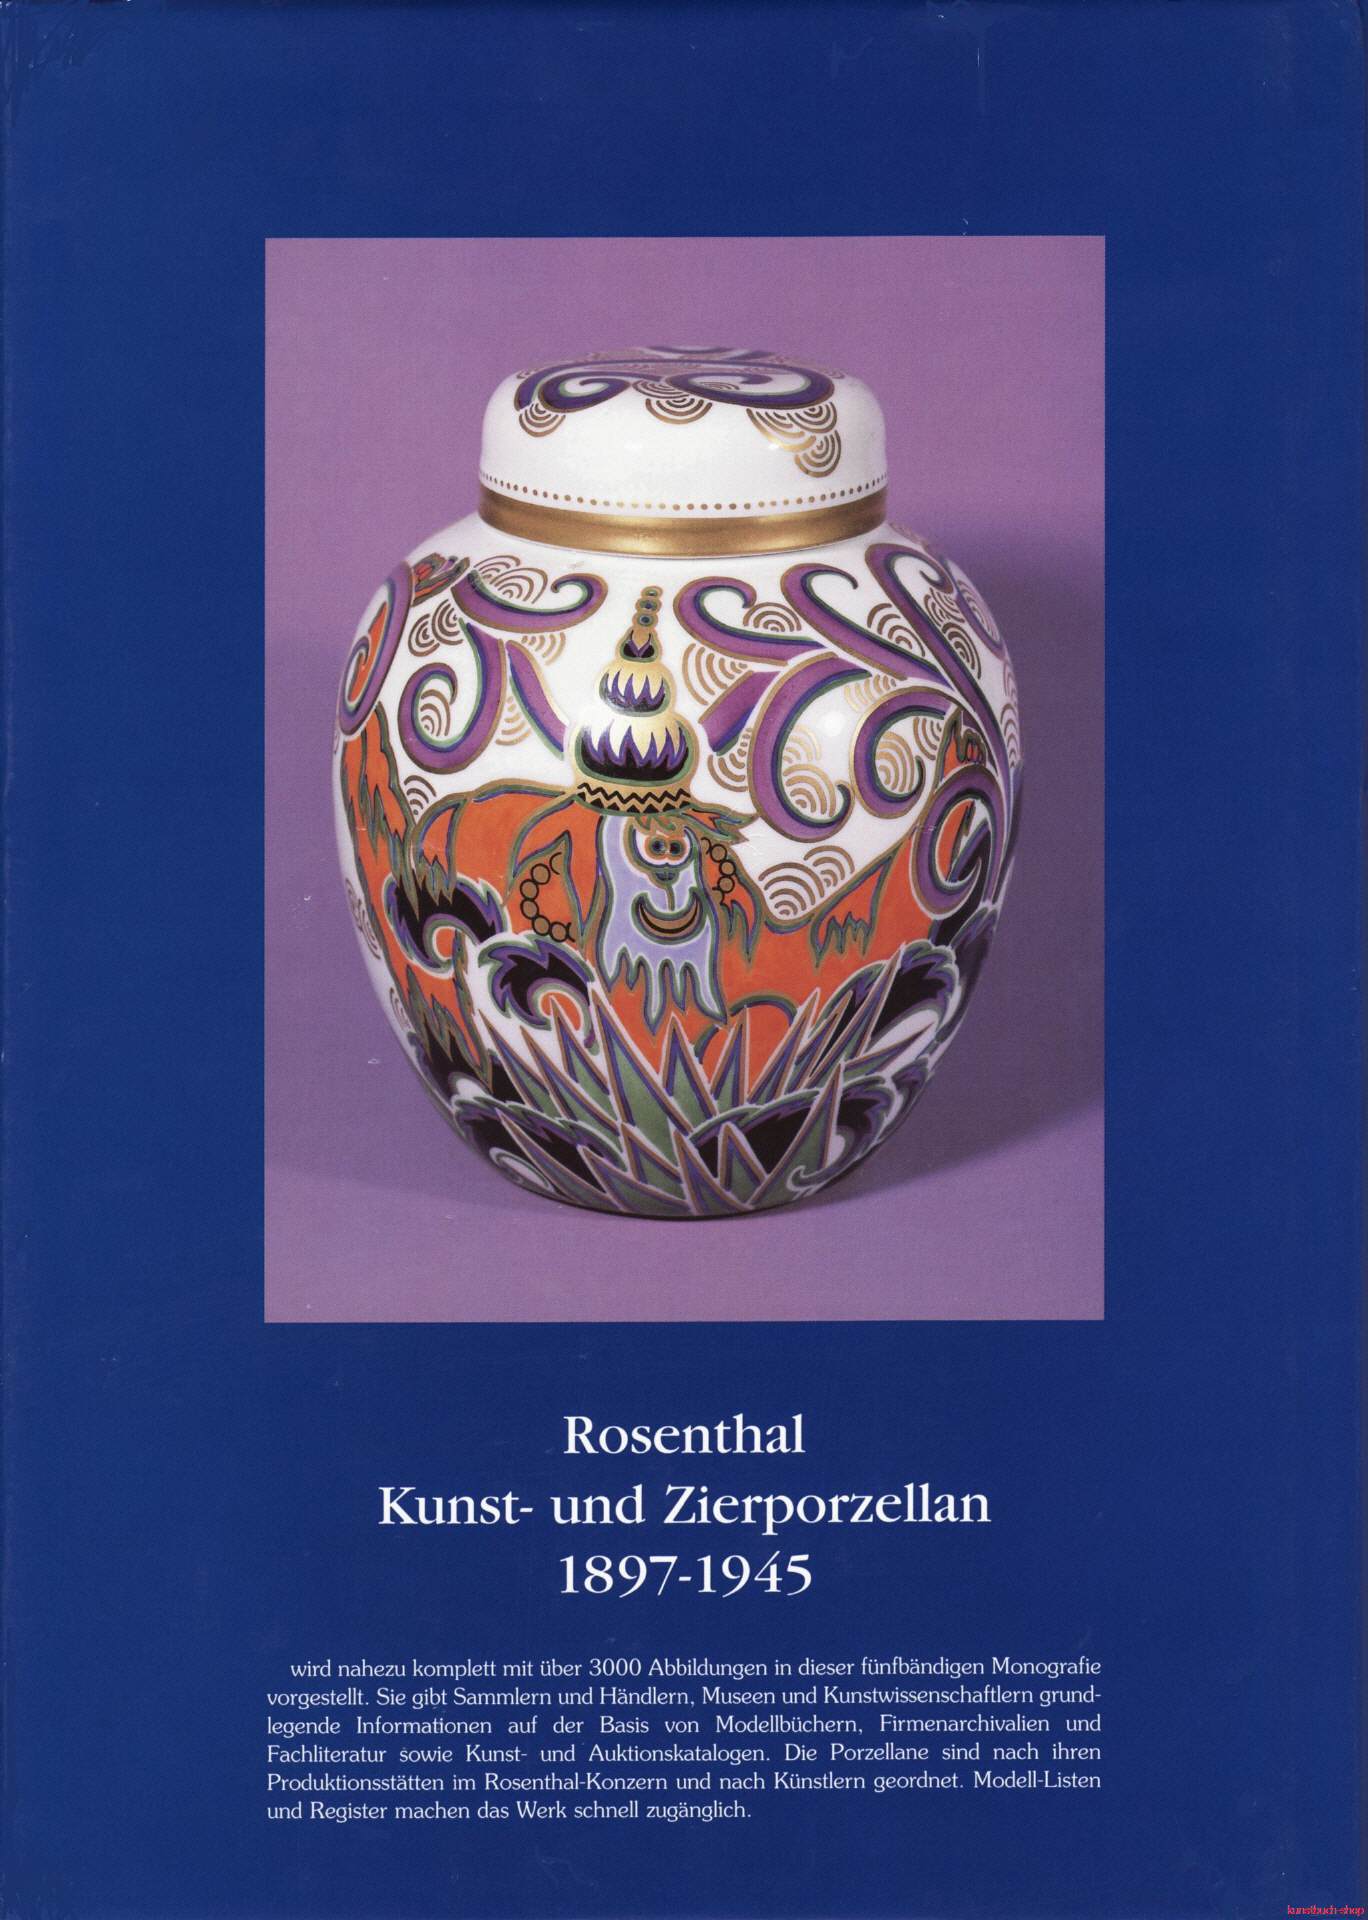 Rosenthal, Kunst- und Zierporzellan 1897-1945 / Rosenthal - Kunst und Zierporzellan 1897-1945. Band 3